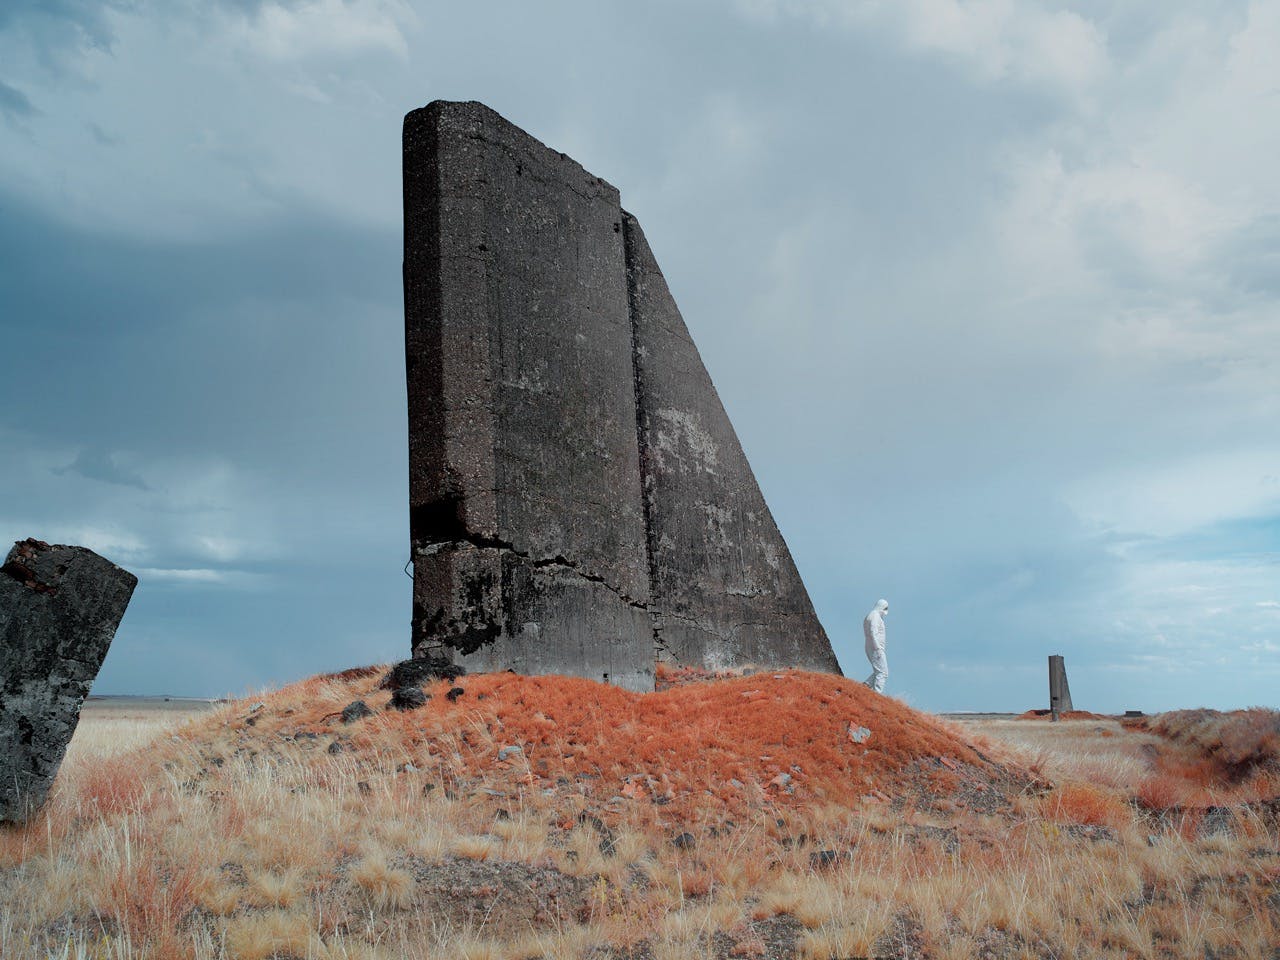 Black Pylon, Semipalatinsk Test Site, Kazakhstan, 2022